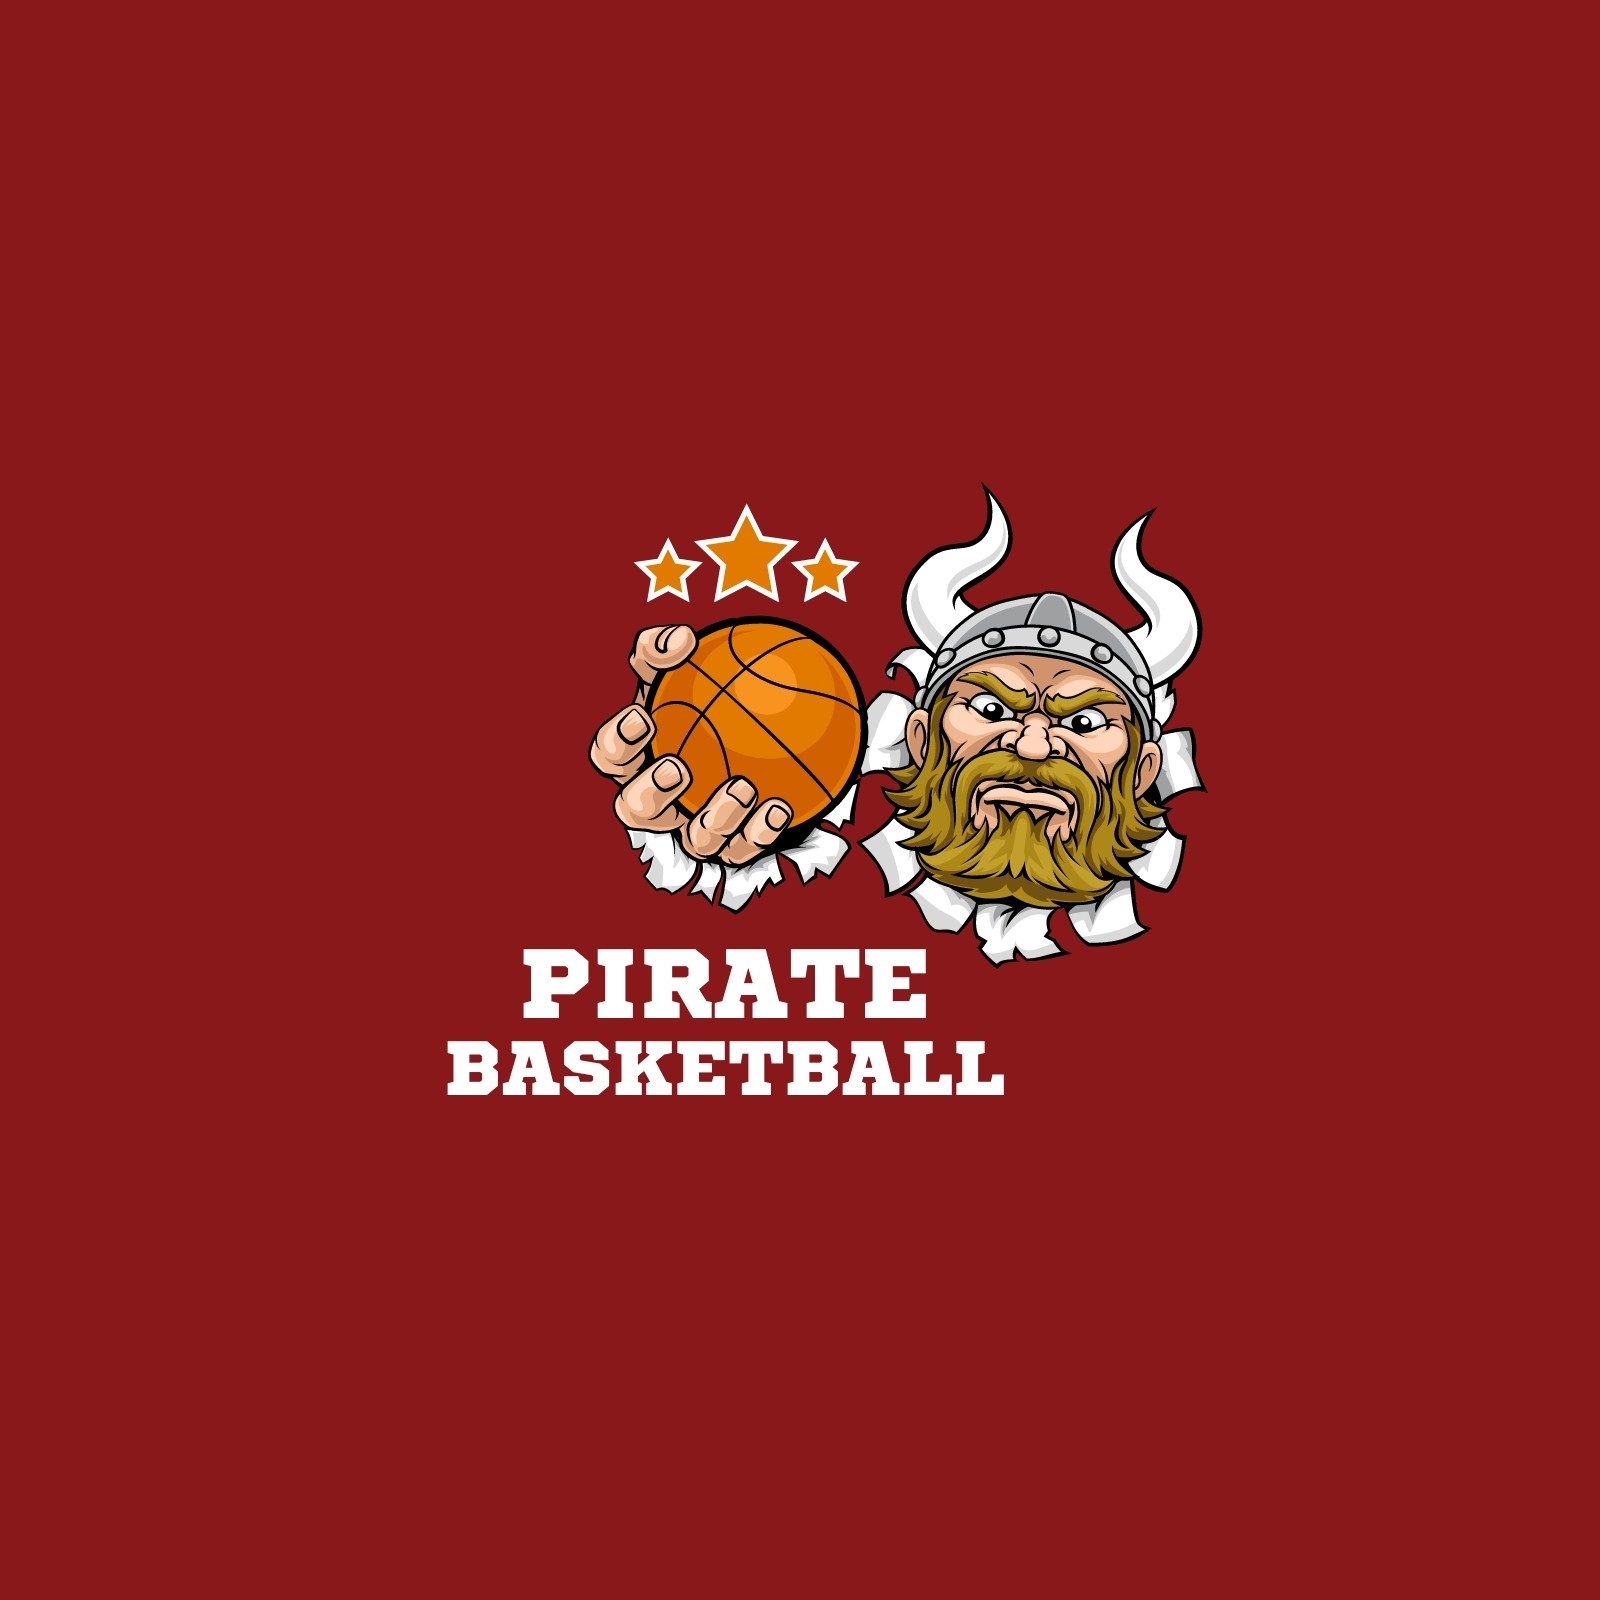 Page 4 - Free printable, customizable basketball logo templates